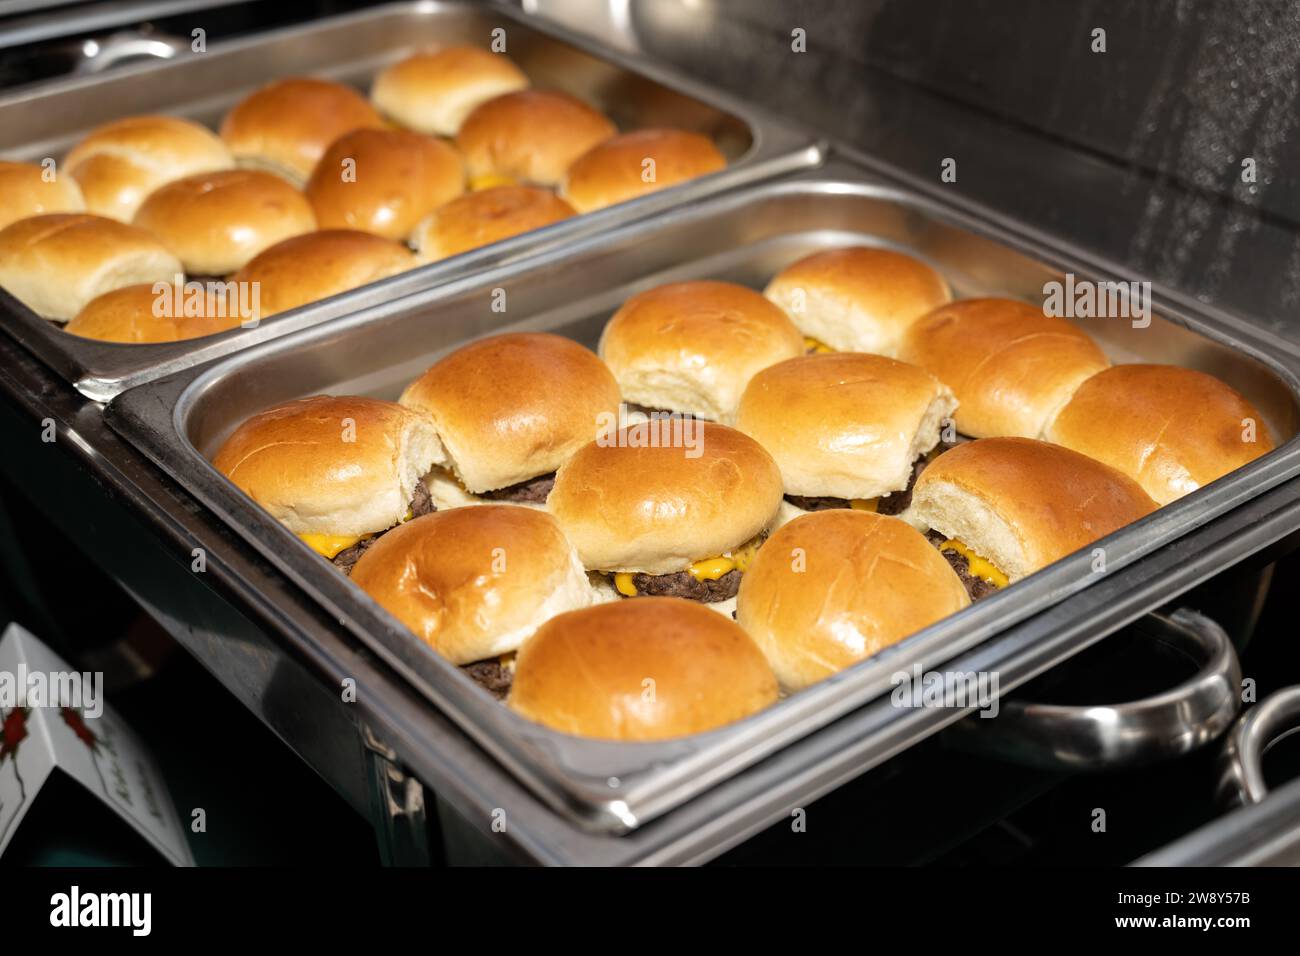 Cheeseburger-Slider mit goldgerösteten Brötchen sind in den Serviergerichten angeordnet und verzehrfertig. Stockfoto